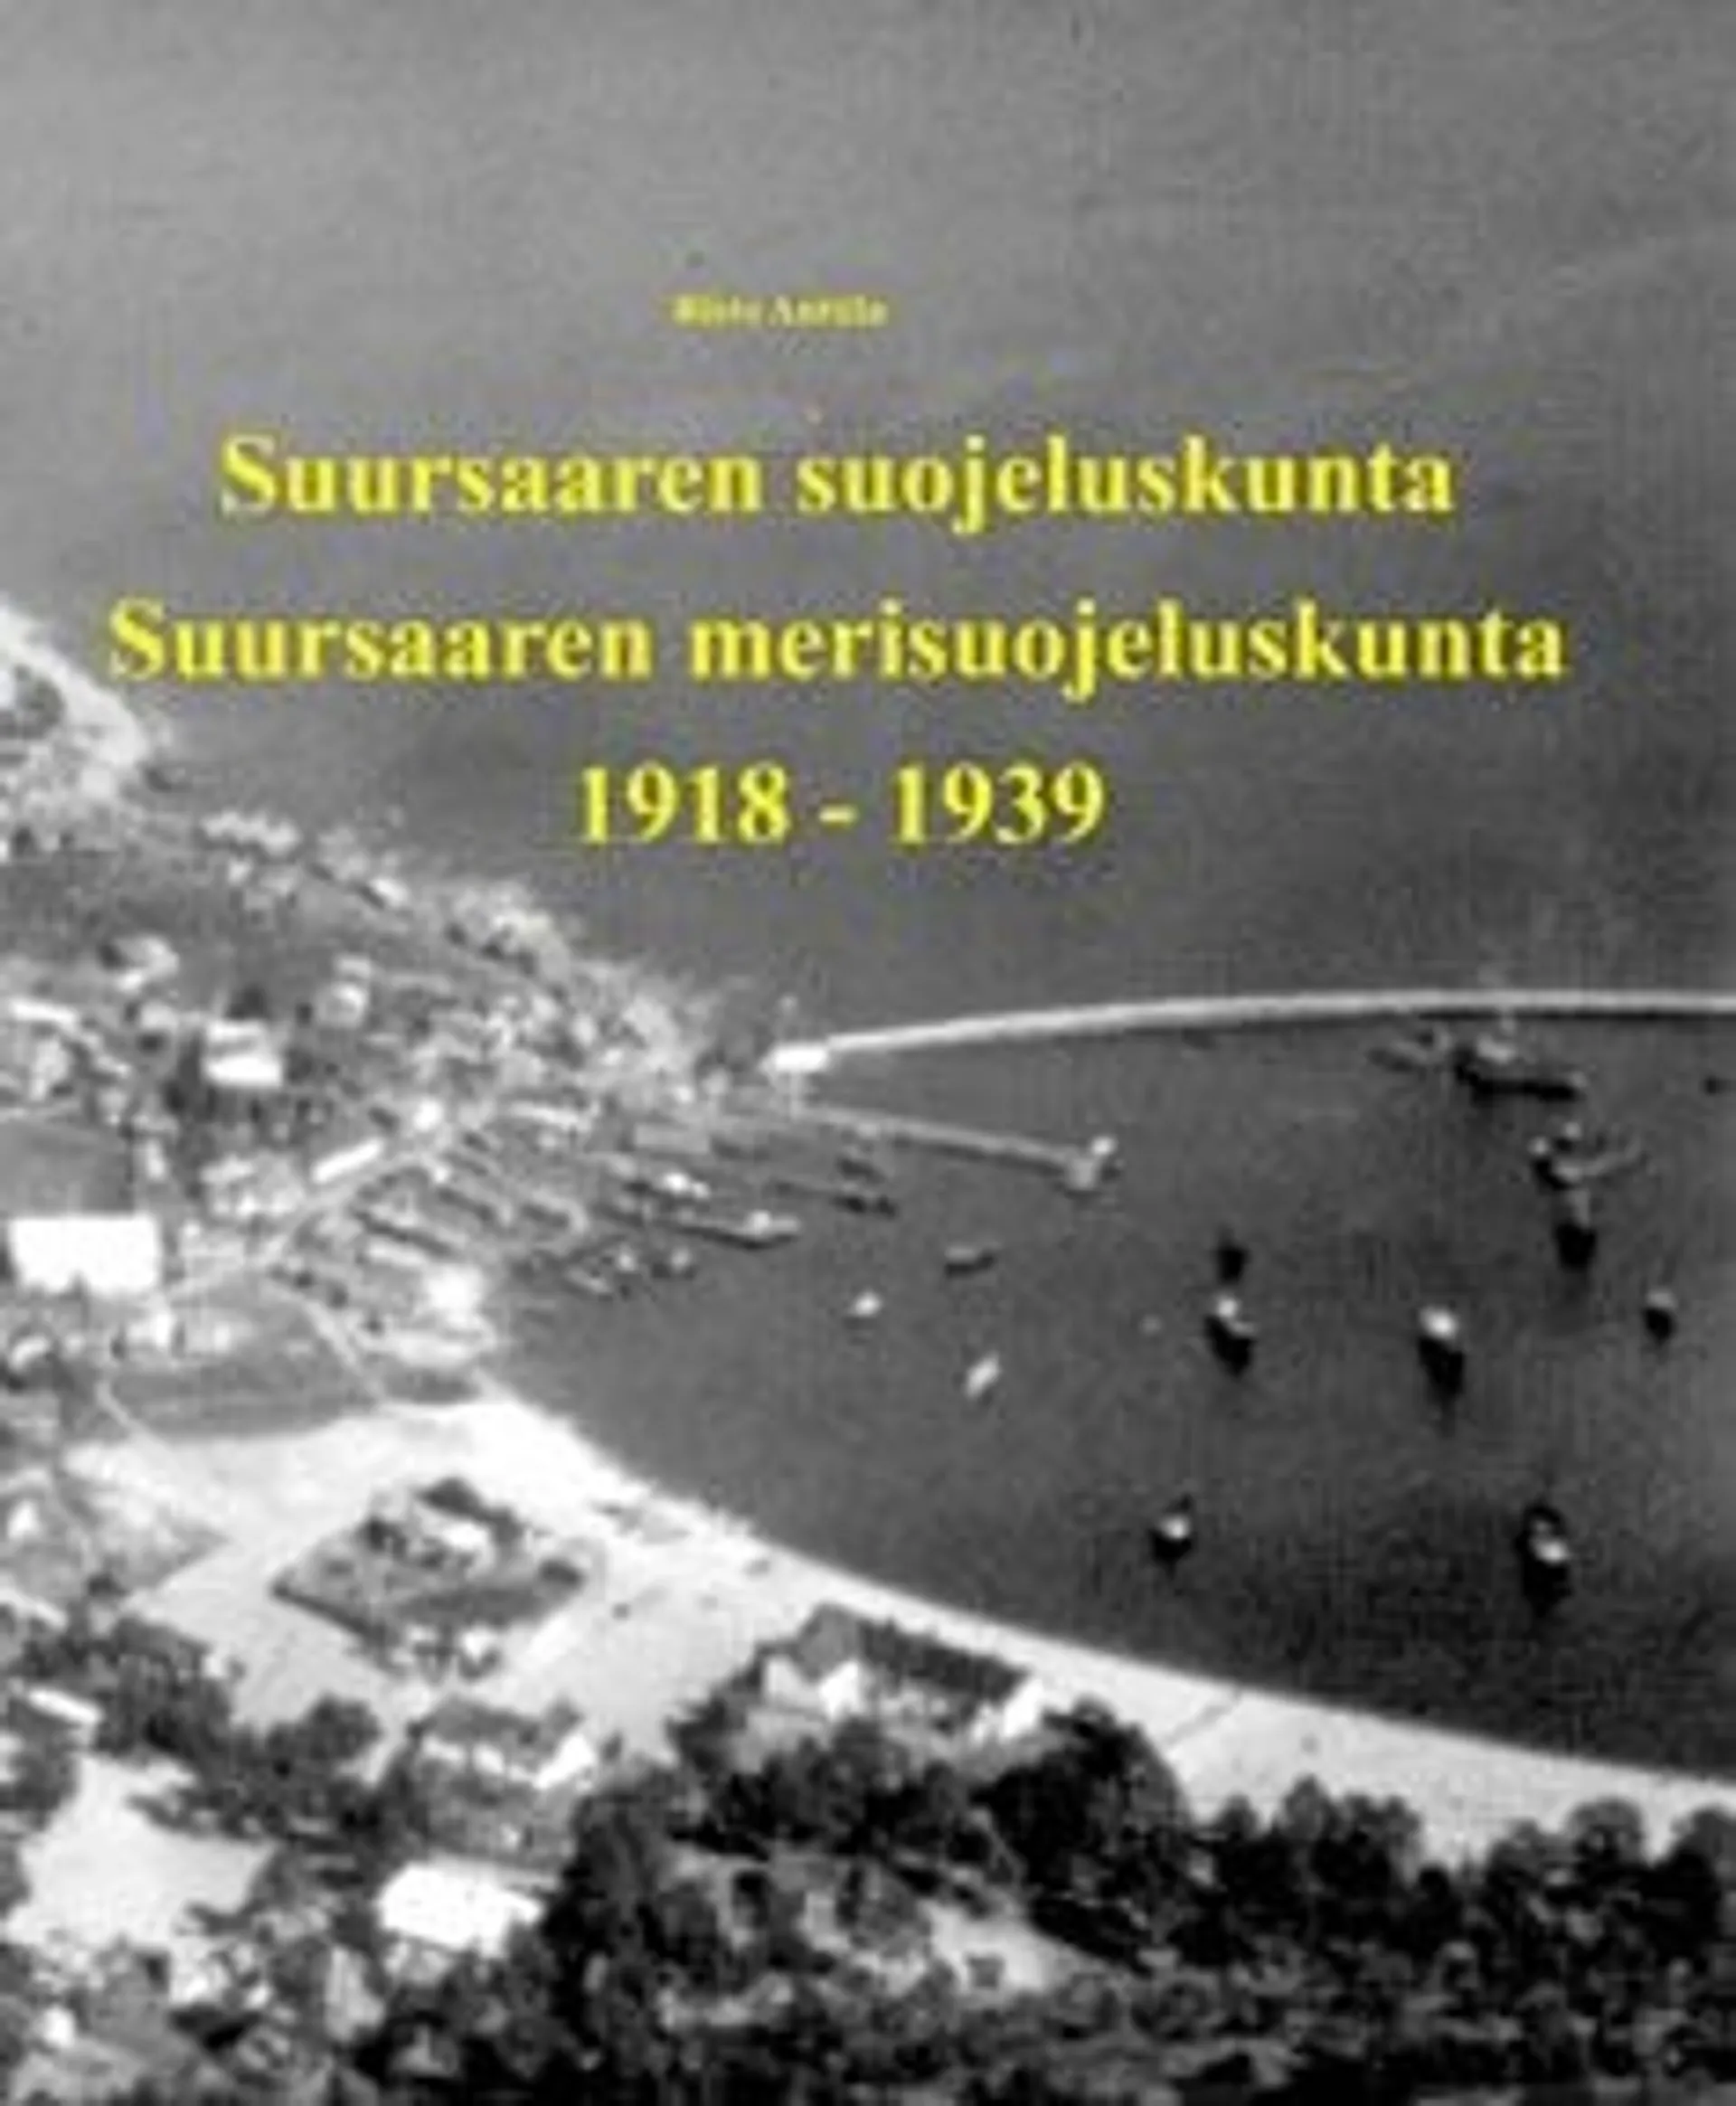 Anttila, Suursaaren suojeluskunta - Suursaaren merisuojeluskunta 1918-1939